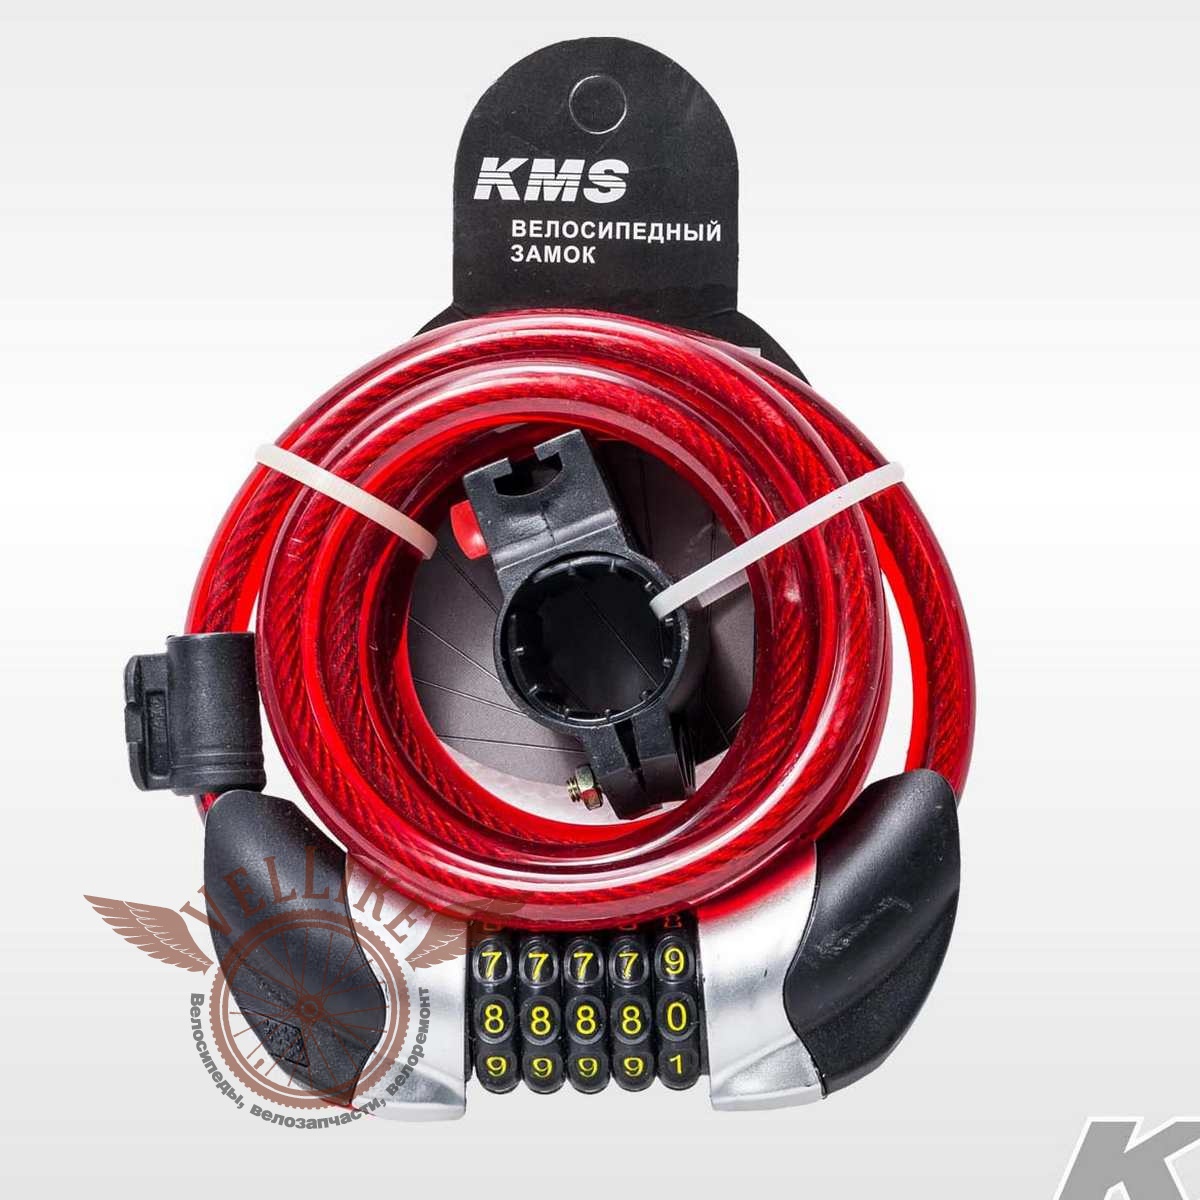 Велозамок "KMS", трос Ø 12*1500, сменный код с подсветкой, инд. упак, модель 2016 года